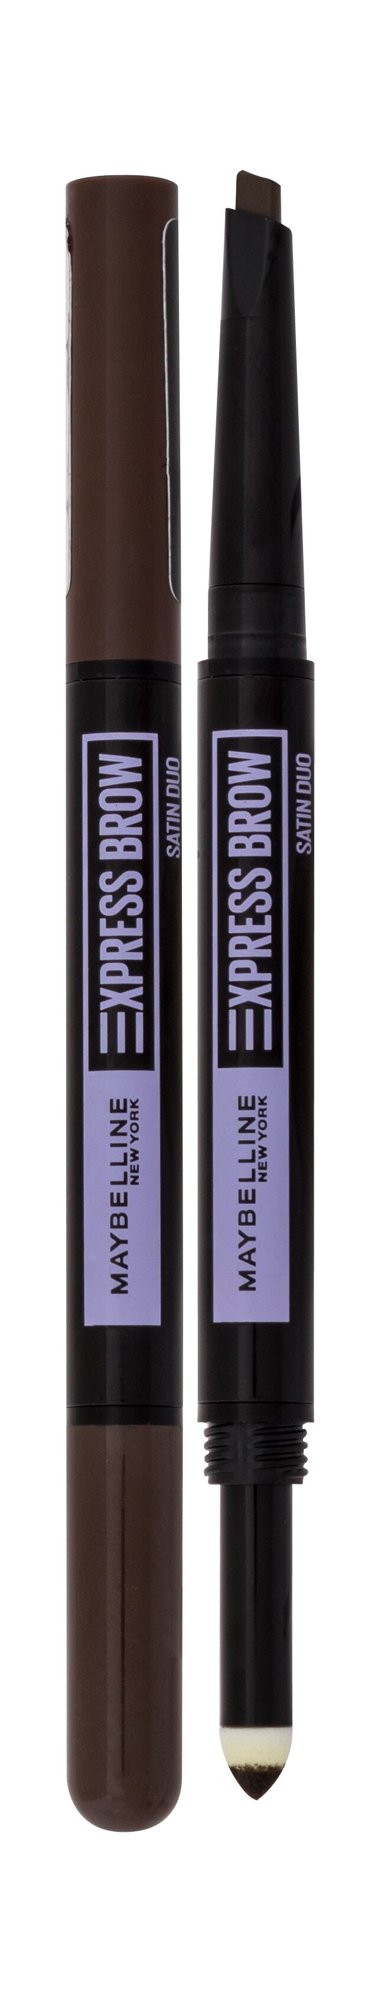 Maybelline Express Brow Satin Duo antakių pieštukas